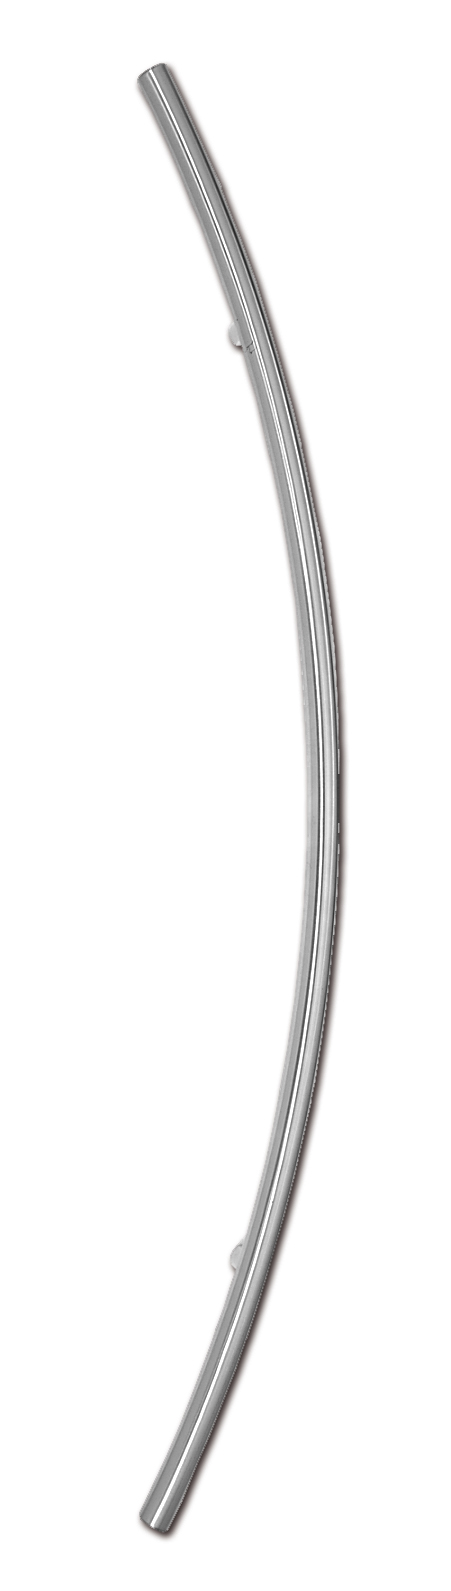 TG 650 - Edelstahl-Außengriff, Sichelform (für Füllungsmontage)